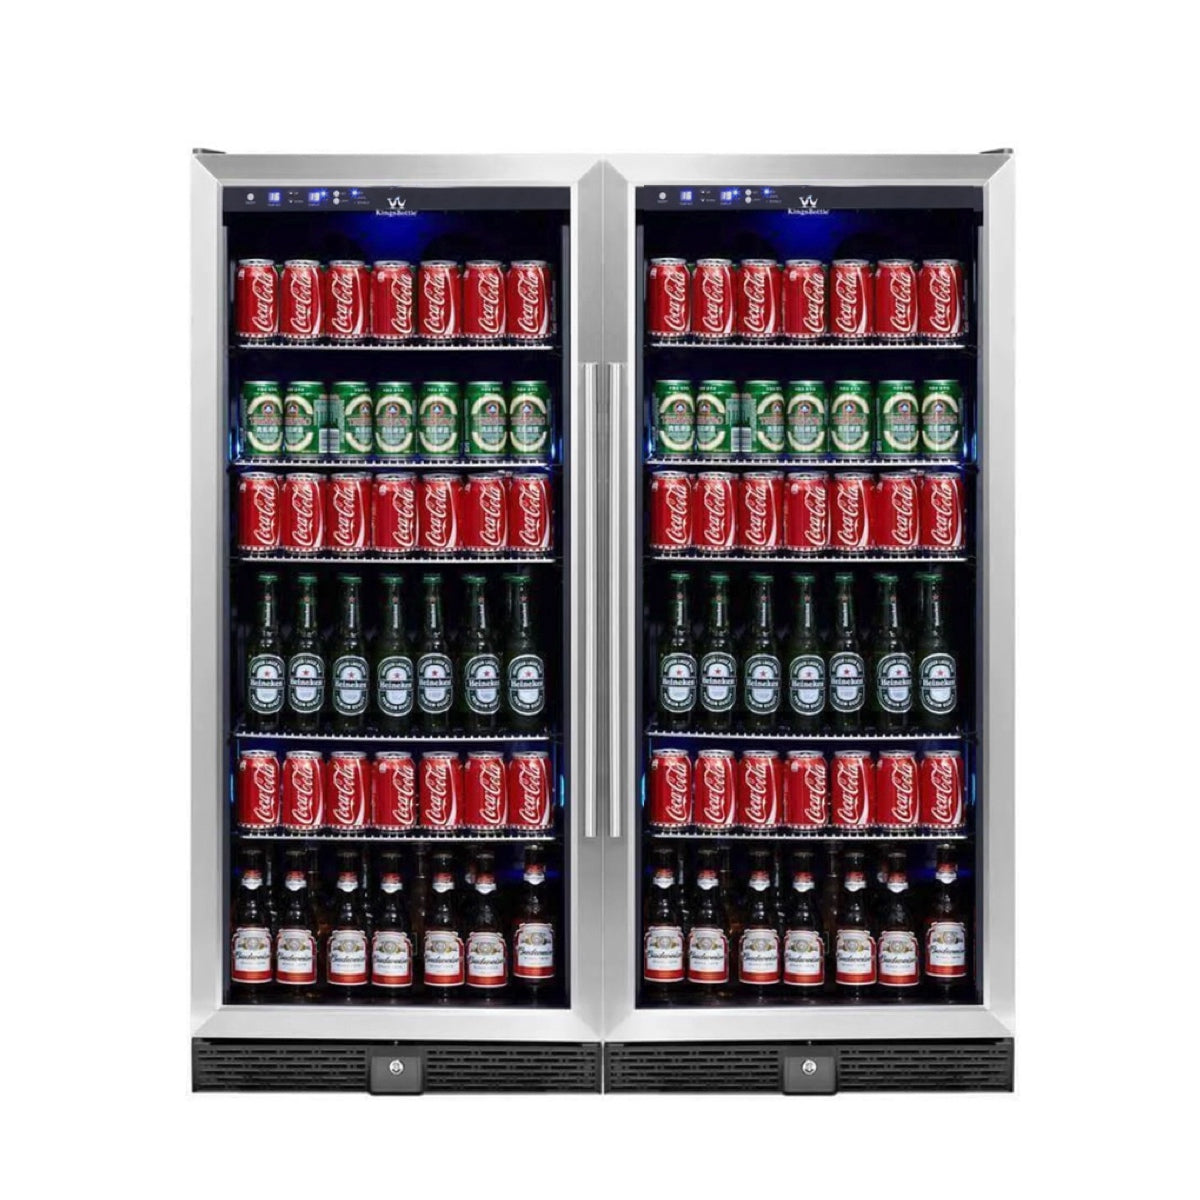 Kingsbottle 56" Tall Beverage Fridge Center Freestanding KBU100BX-SS, LHH-Refrigerators-The Wine Cooler Club